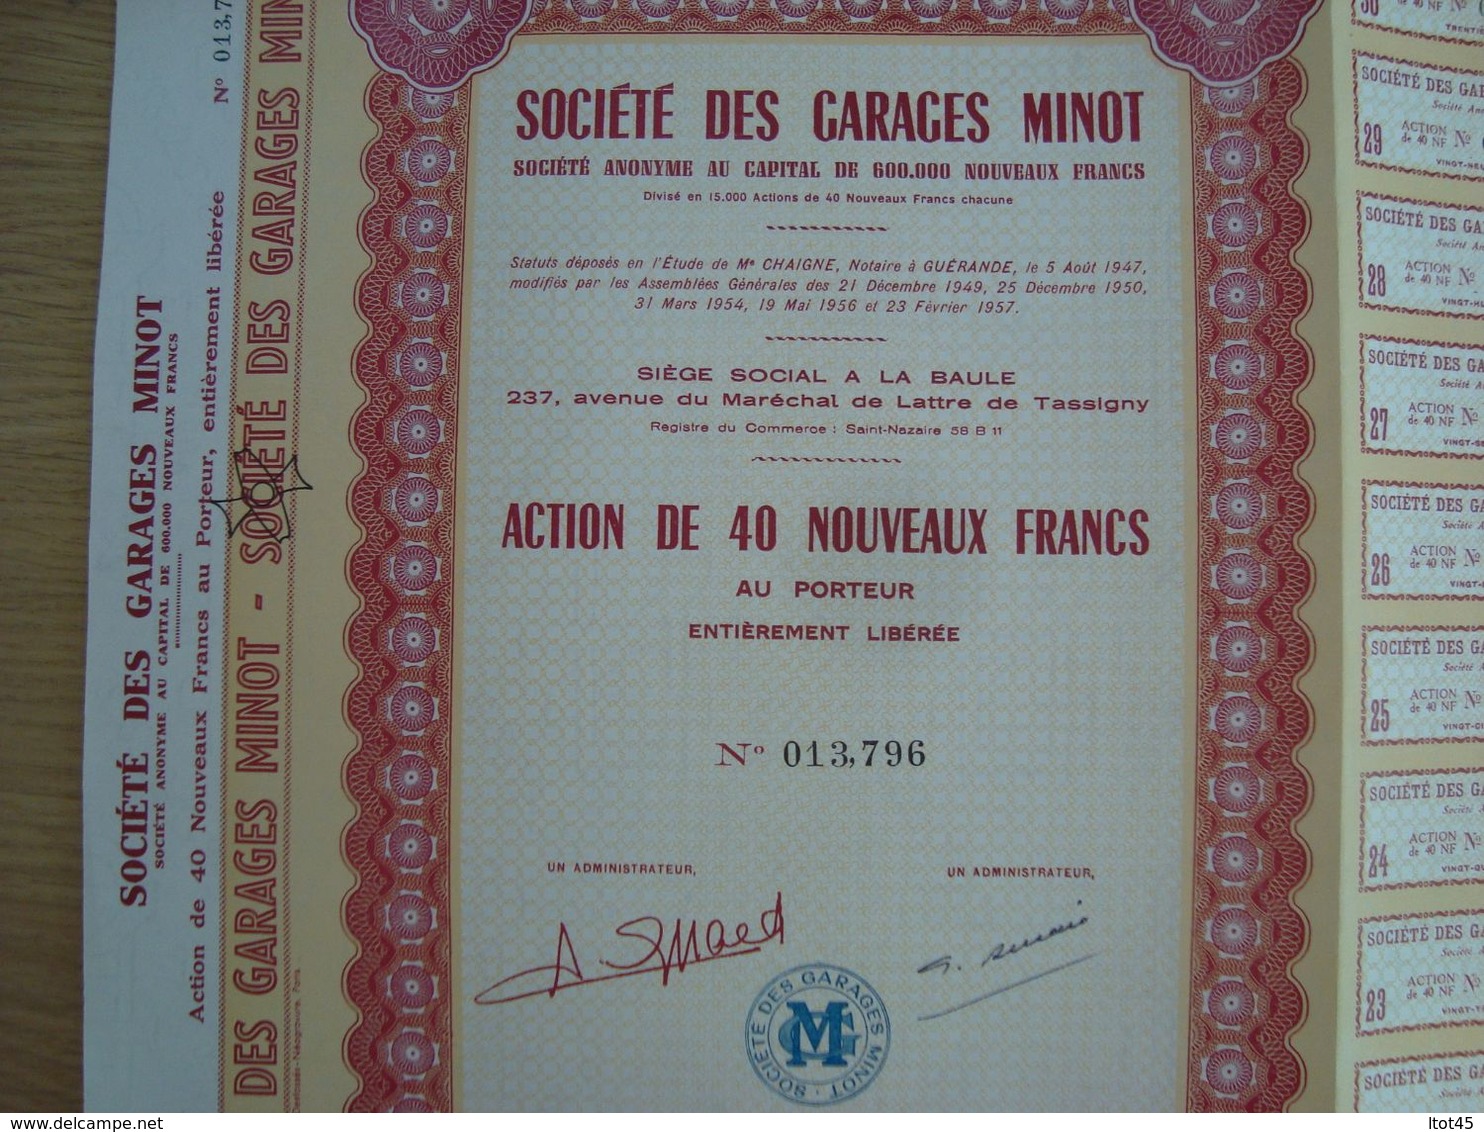 ACTION DE 40 NOUVEAUX FRANCS SOCIETE DES GARAGES MINOT 1960 - Cars